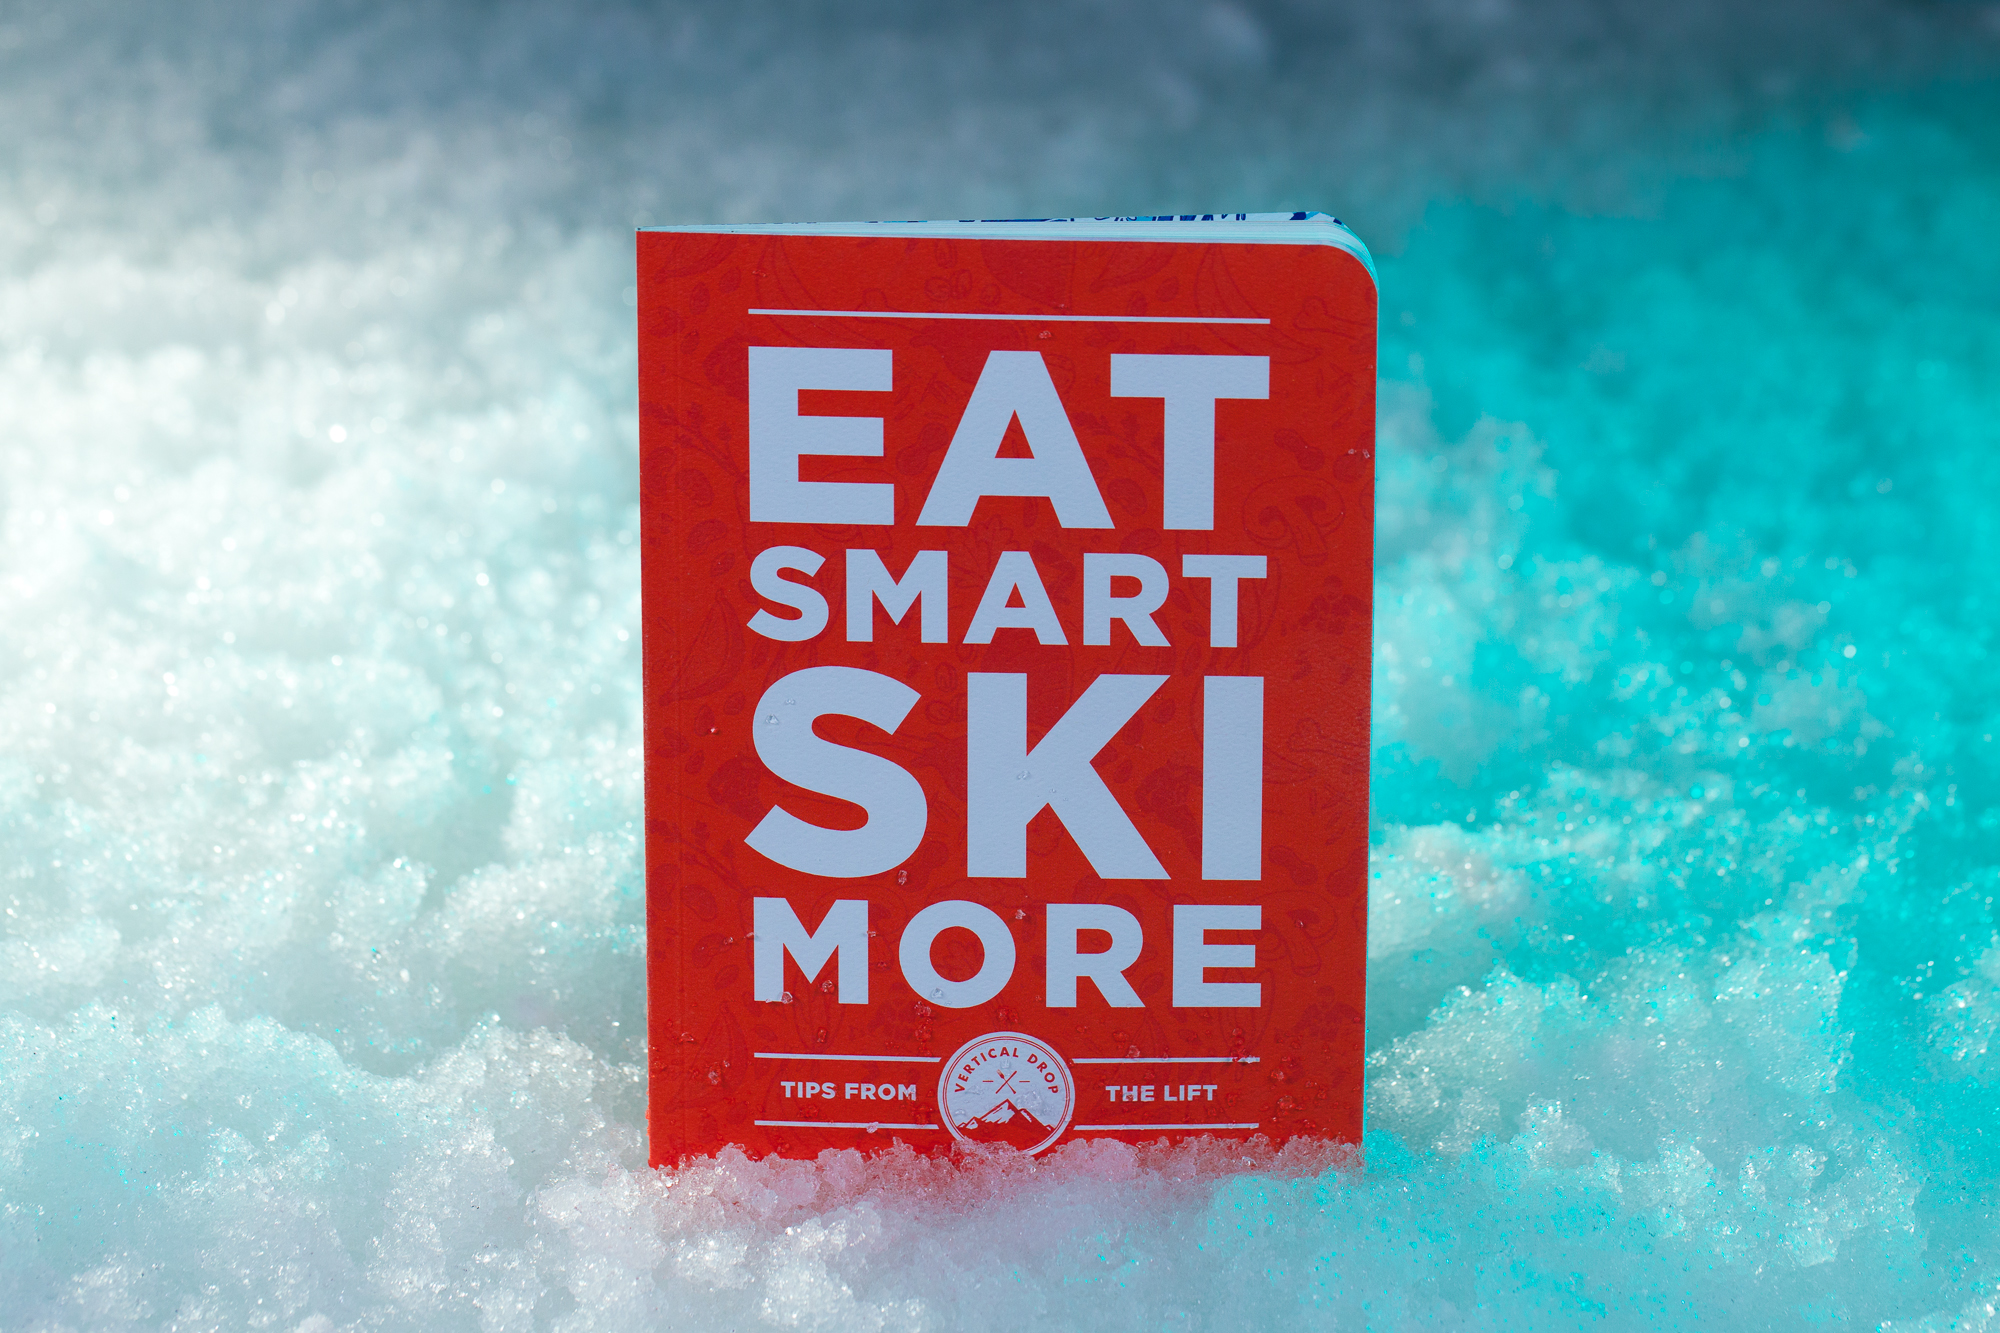 Eat Smart Ski More-49.jpg